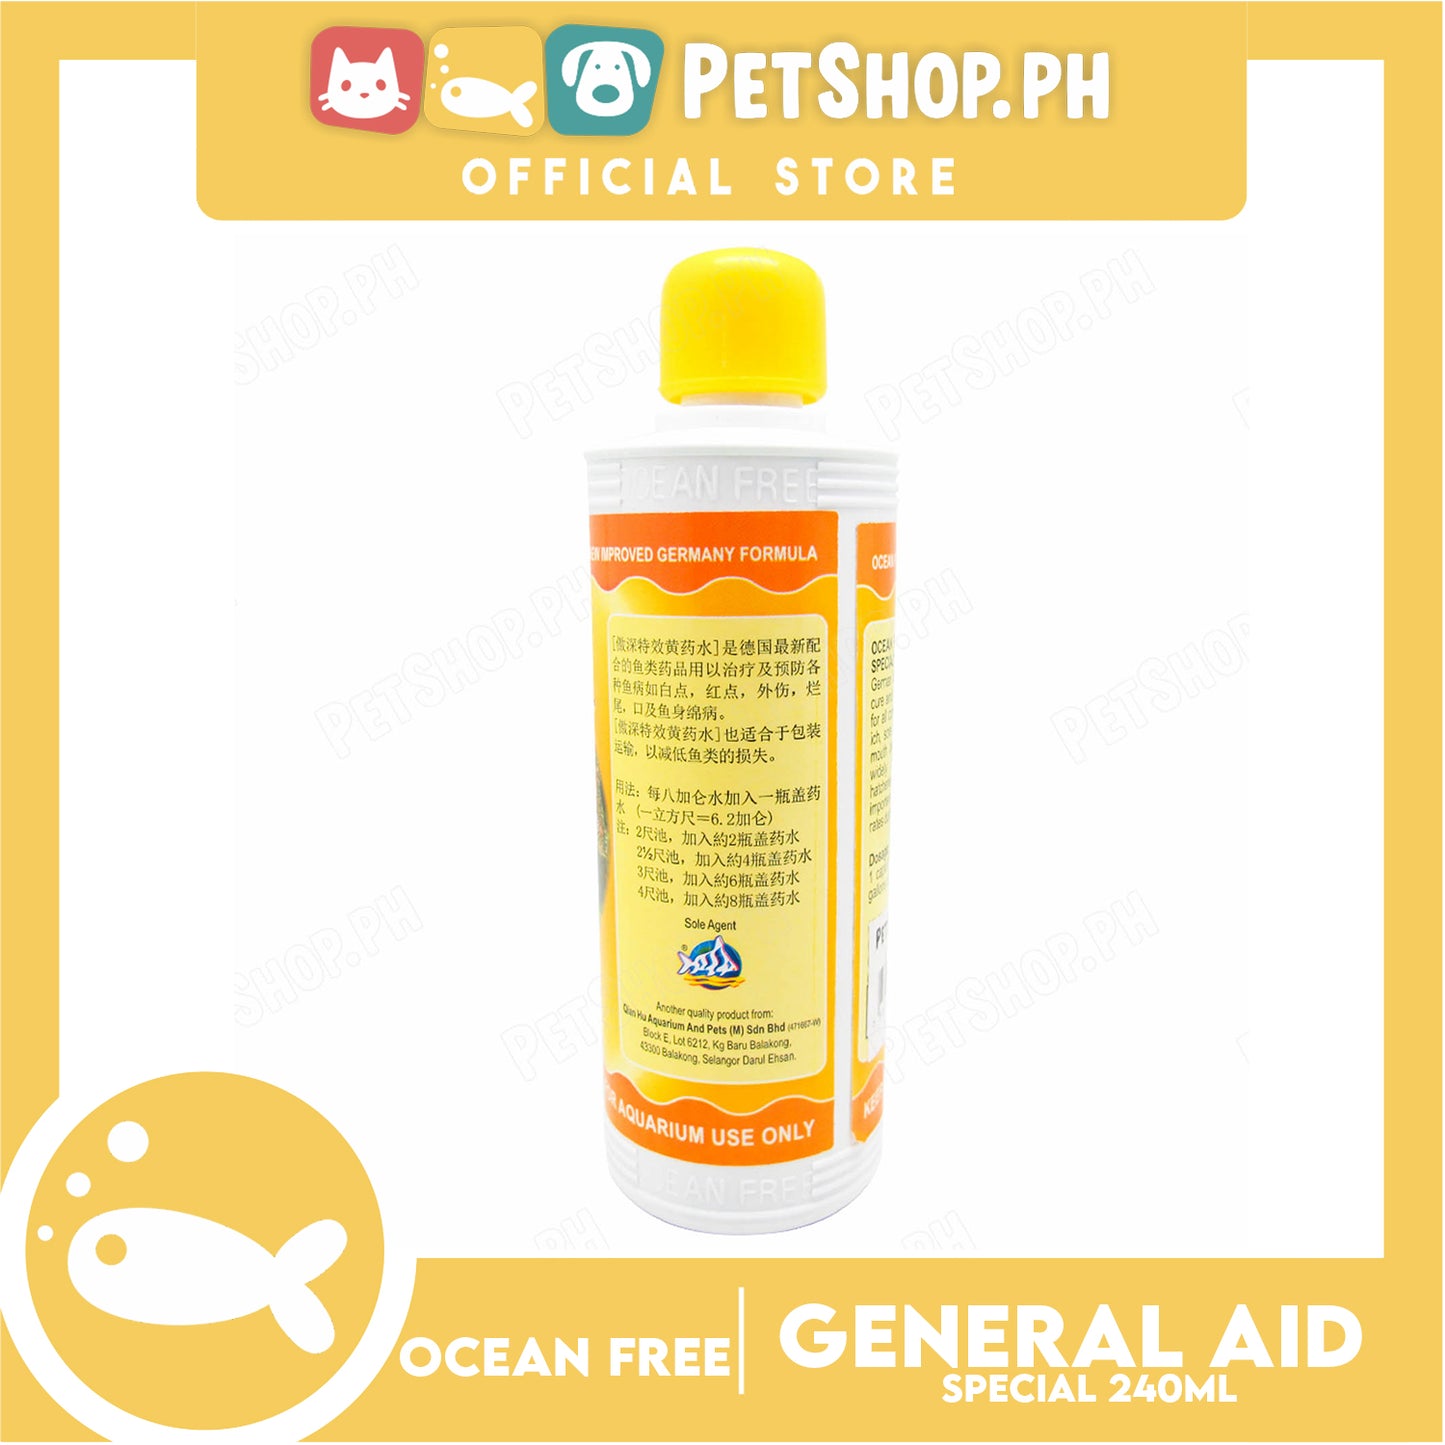 Ocean Free General Aid Special Aquarium Medicine 240ml